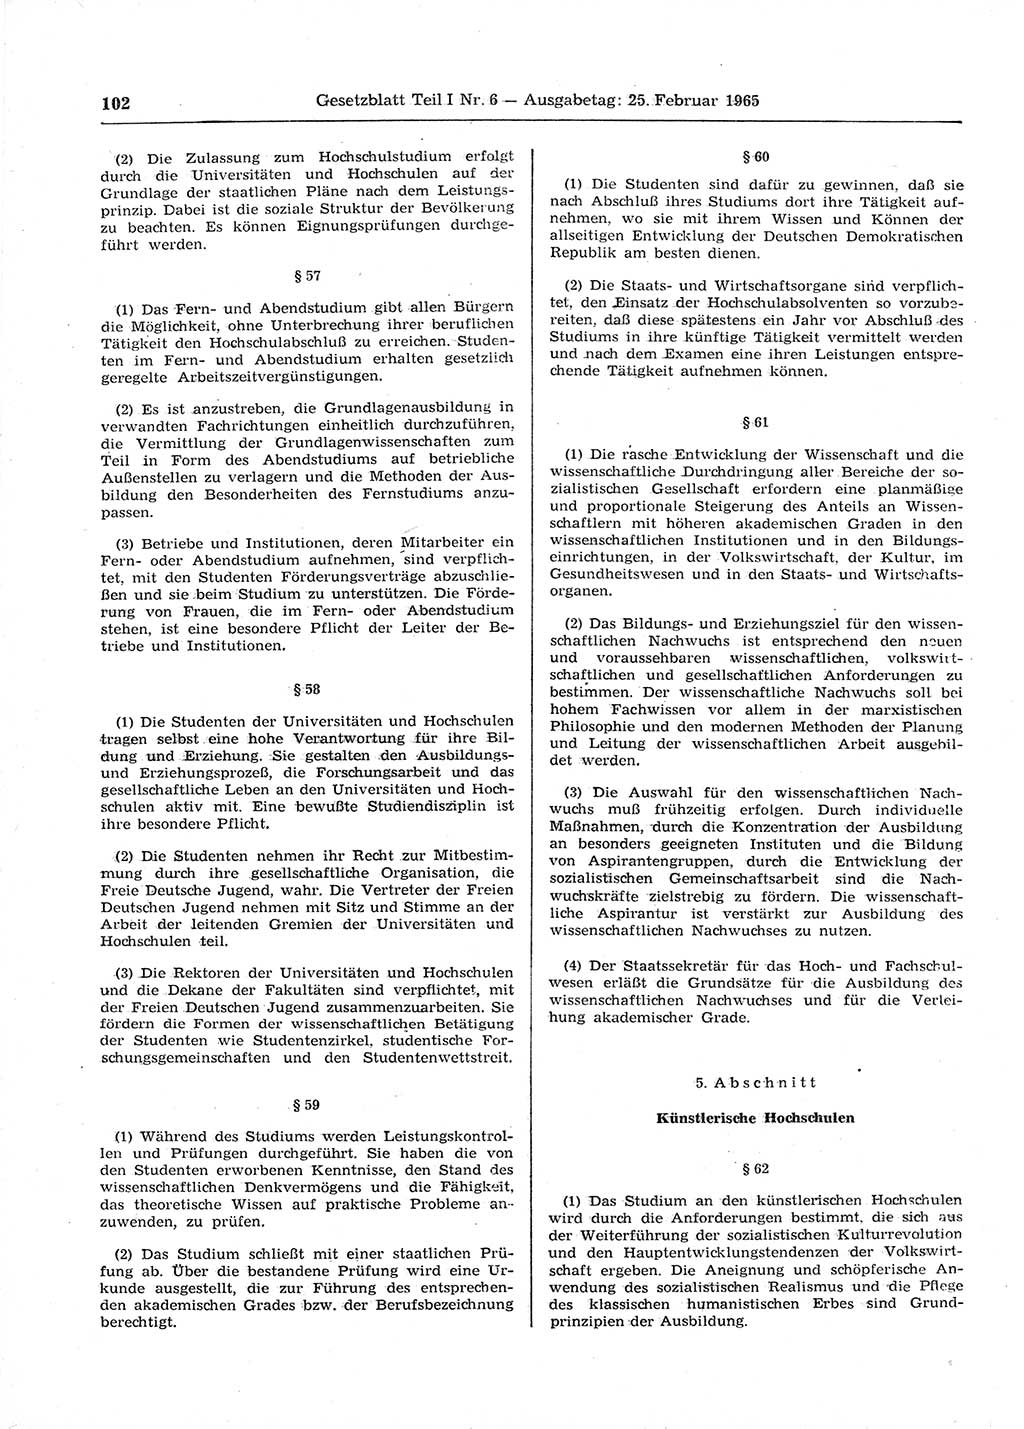 Gesetzblatt (GBl.) der Deutschen Demokratischen Republik (DDR) Teil Ⅰ 1965, Seite 102 (GBl. DDR Ⅰ 1965, S. 102)